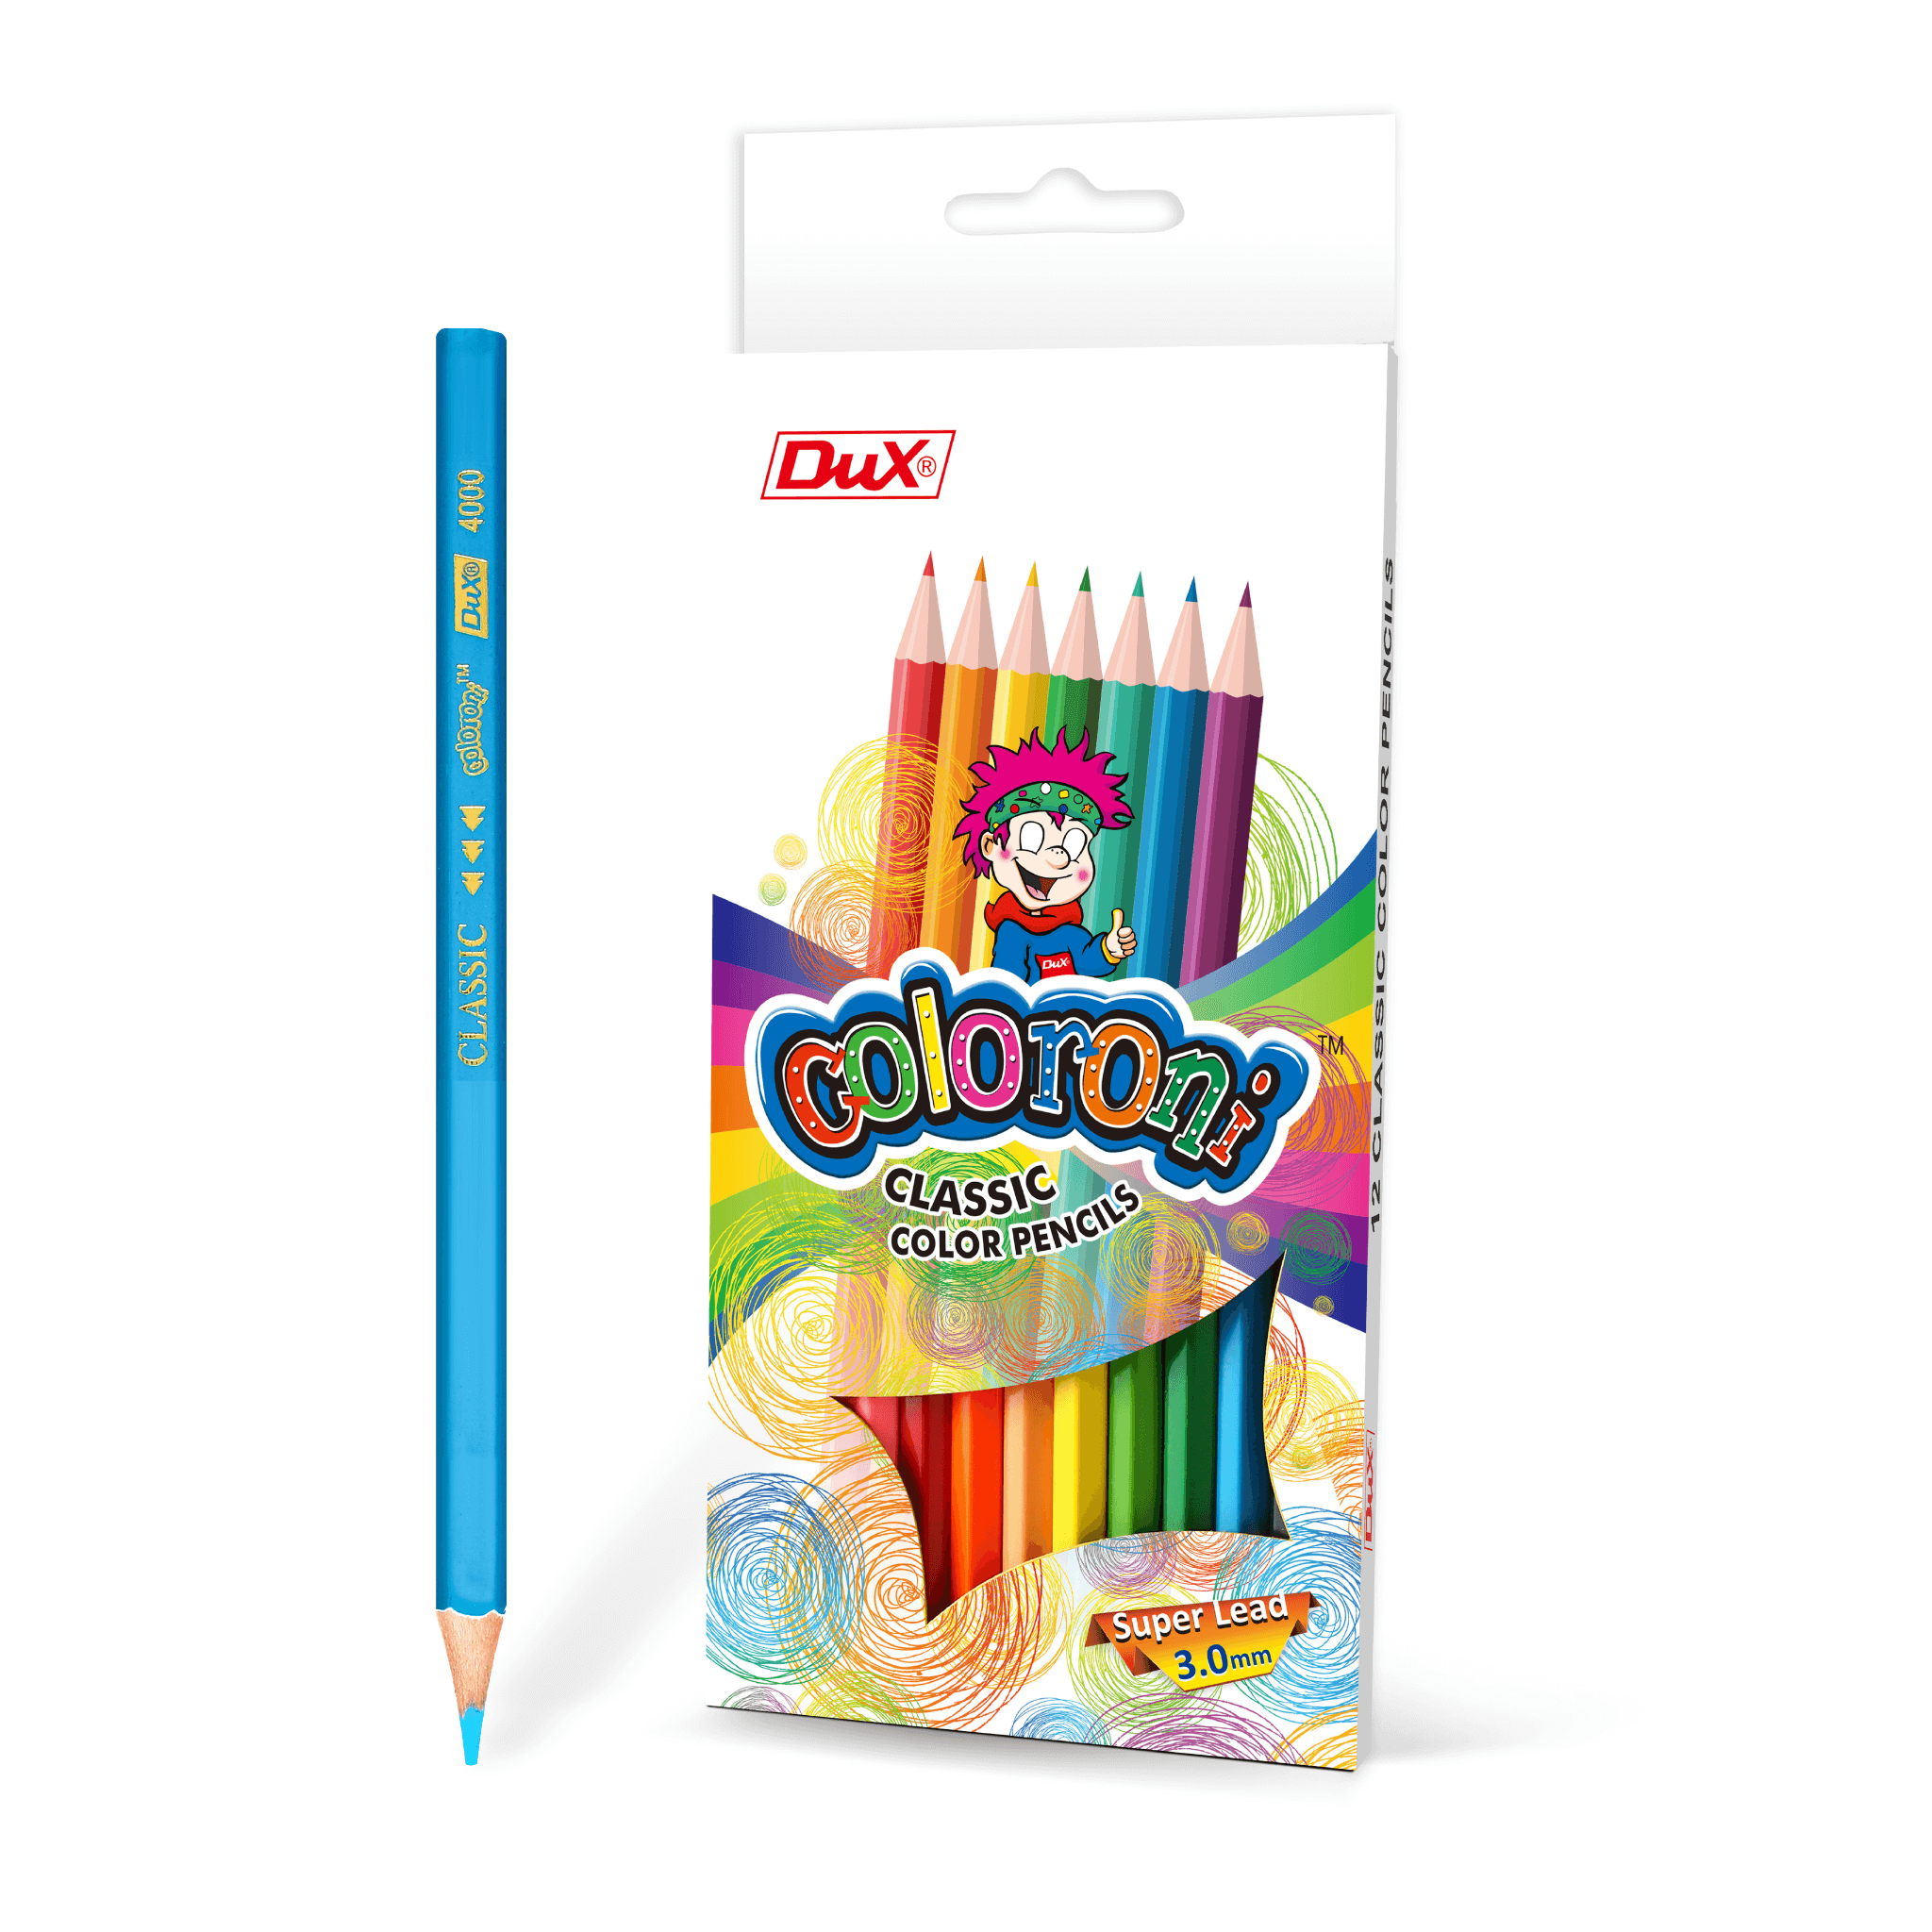 Dux Coloroni Color Pencils